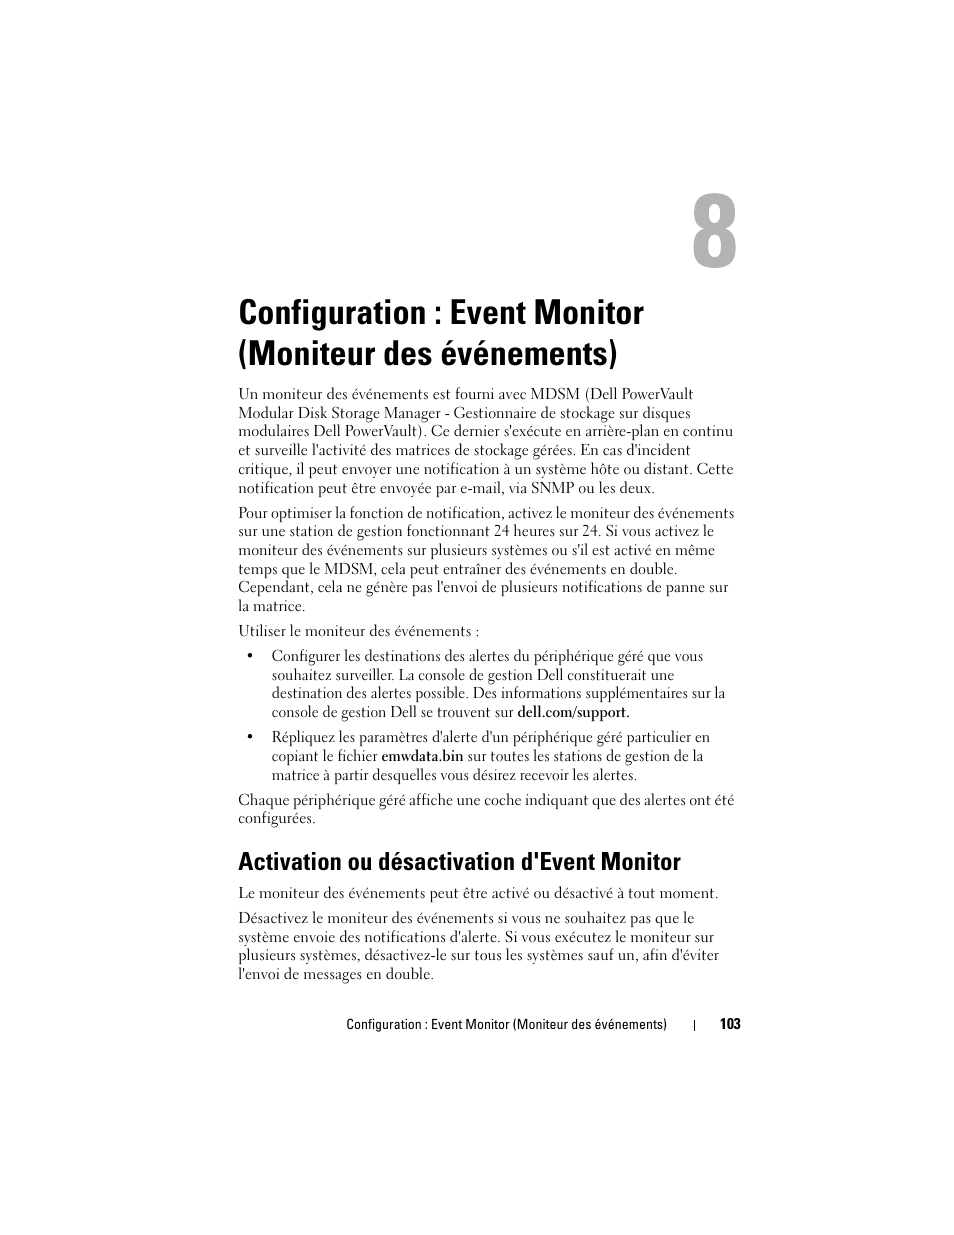 Activation ou désactivation d'event monitor, Configuration : event monitor, Moniteur des événements) | Dell PowerVault MD3220i Manuel d'utilisation | Page 103 / 314